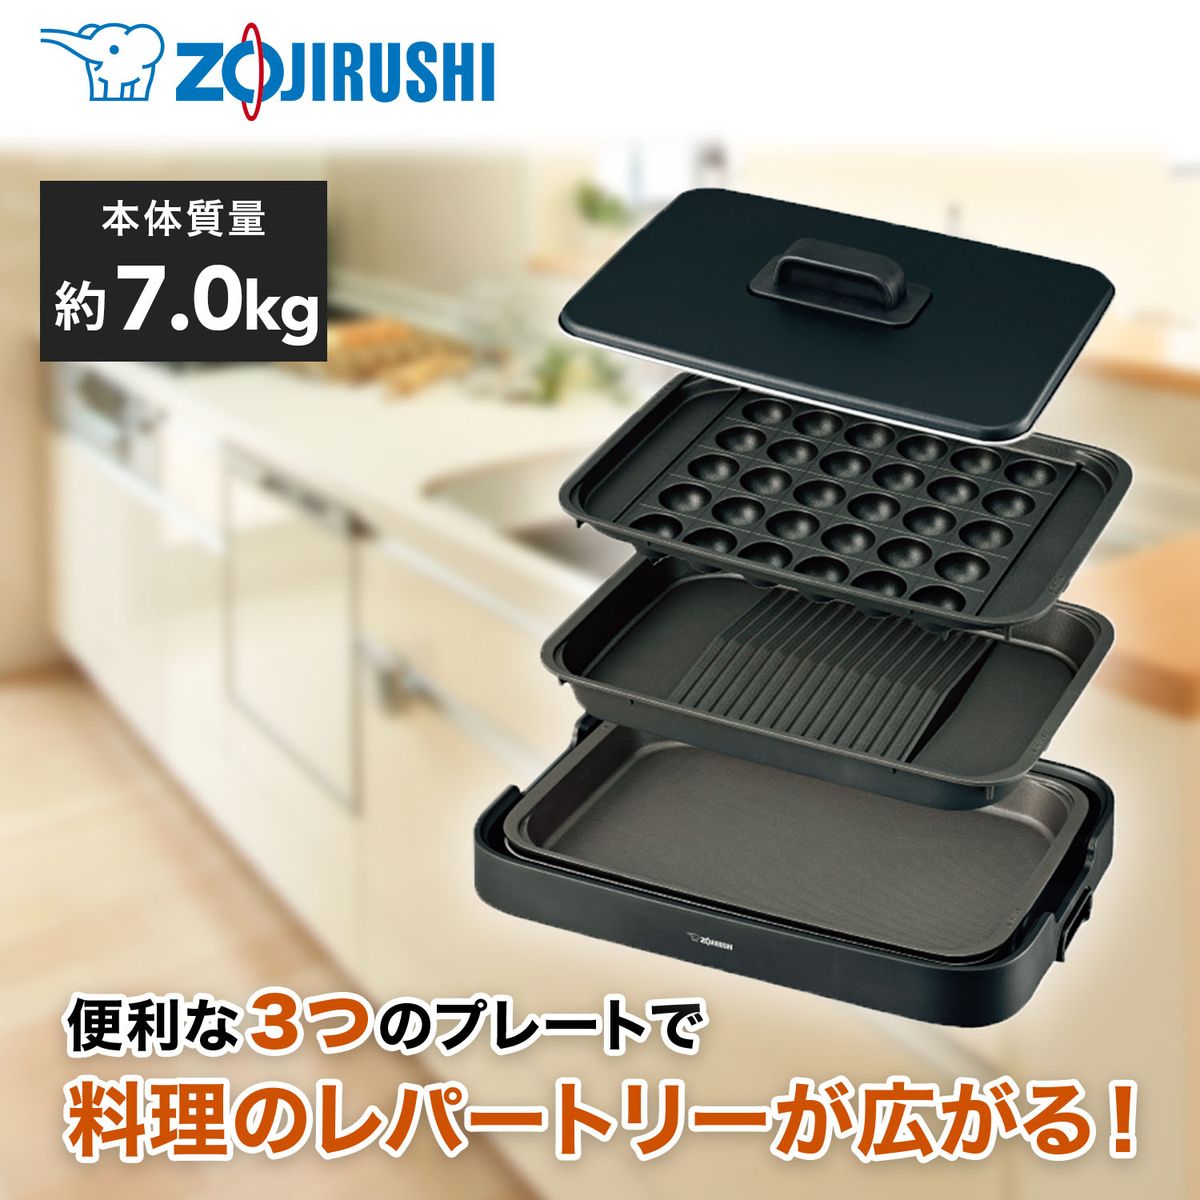 ZOJIRUSHI ホットプレート 便利な3枚プレート やきやき ブラック